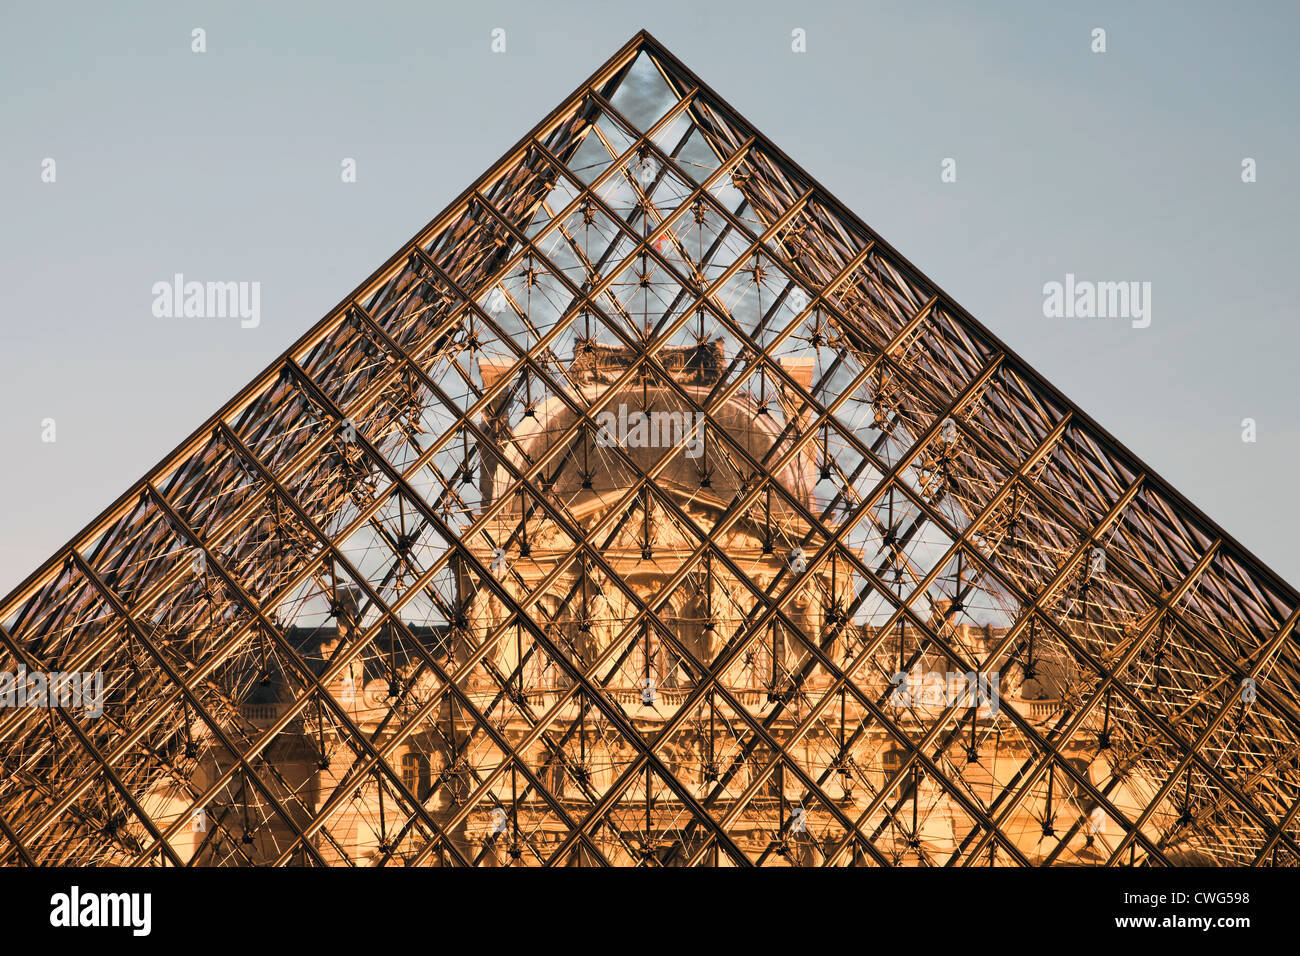 Louvre glas pyramid Paris Stock Photo